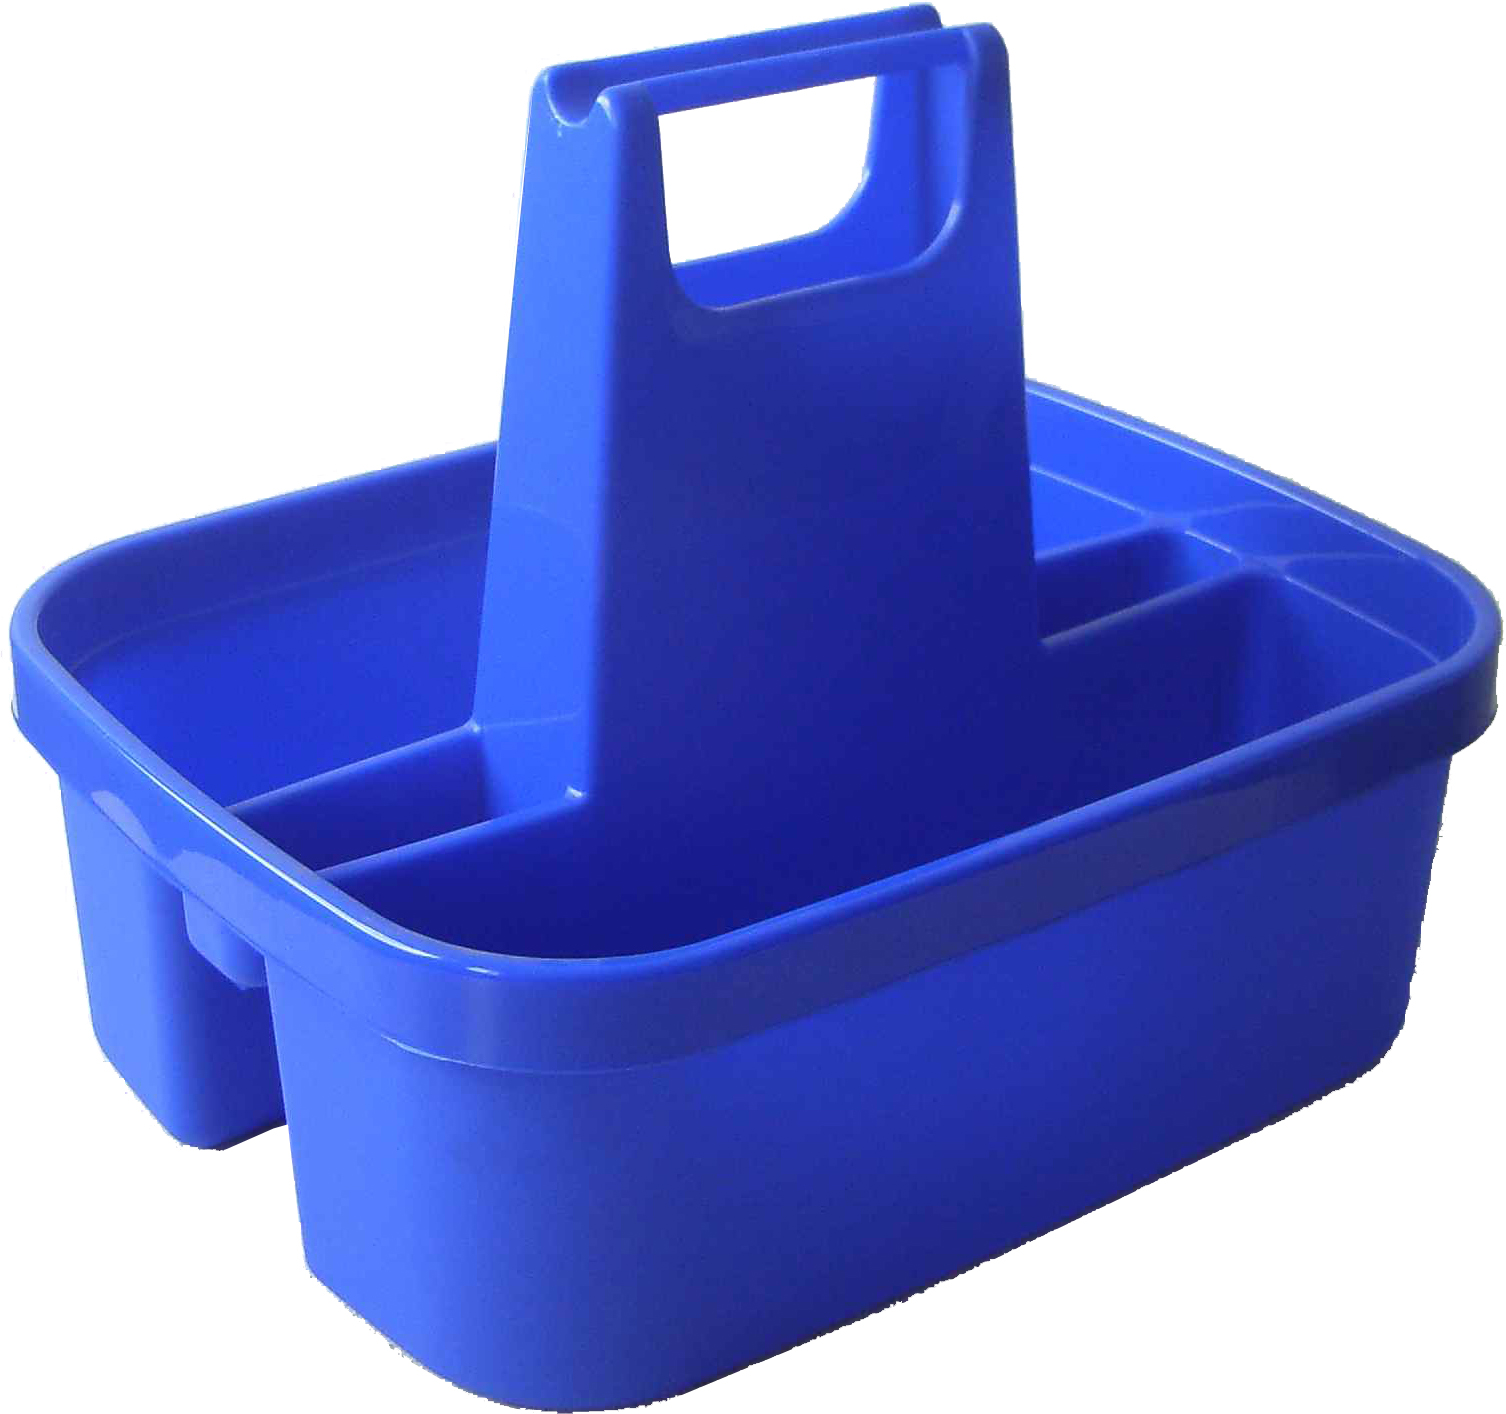 HAAS Tritt Box und Aufbewahrungsbox in Einem - schwarz/blau - Stck. - 3